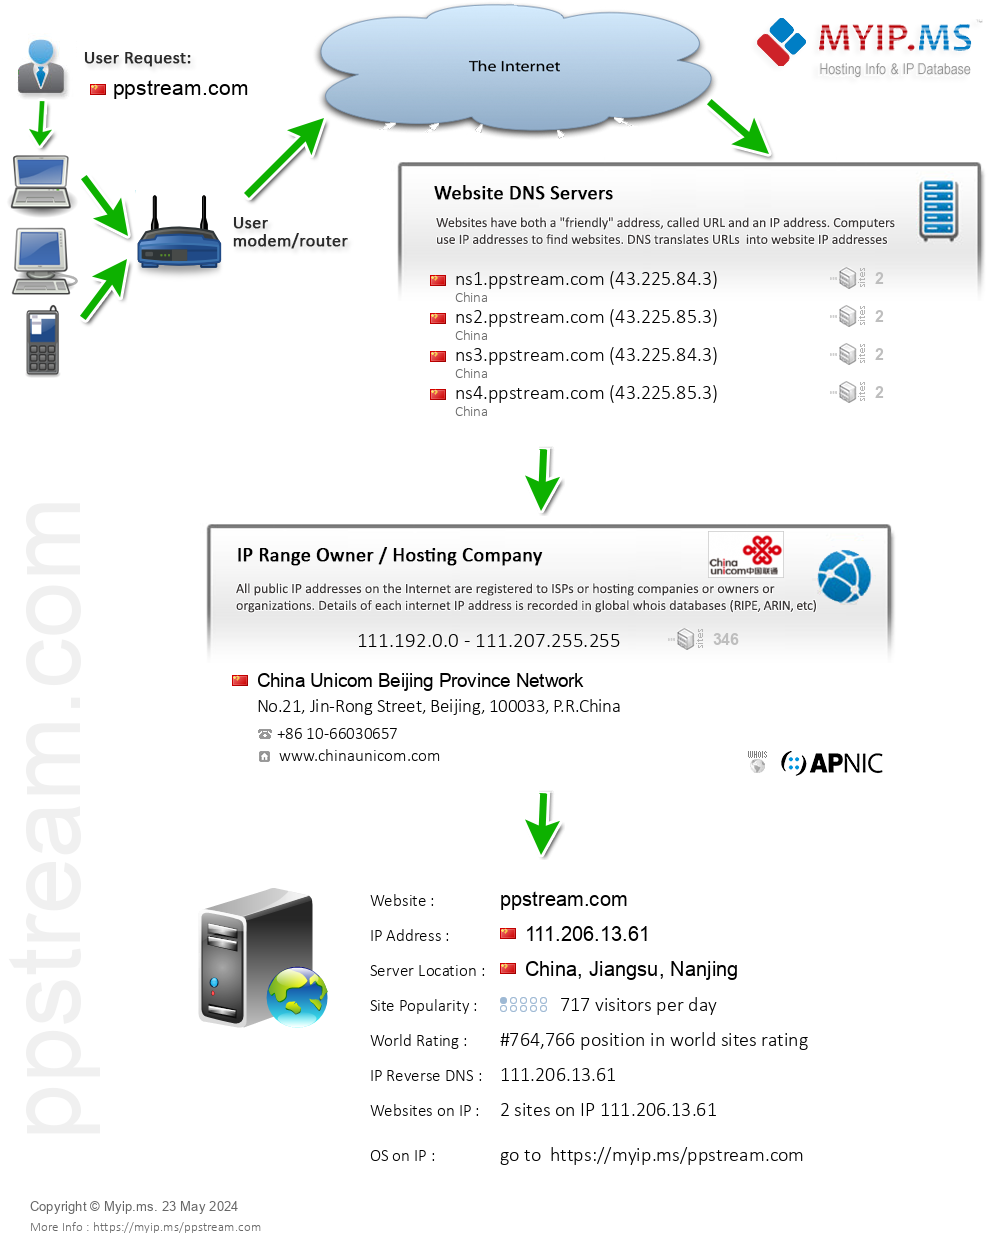 Ppstream.com - Website Hosting Visual IP Diagram